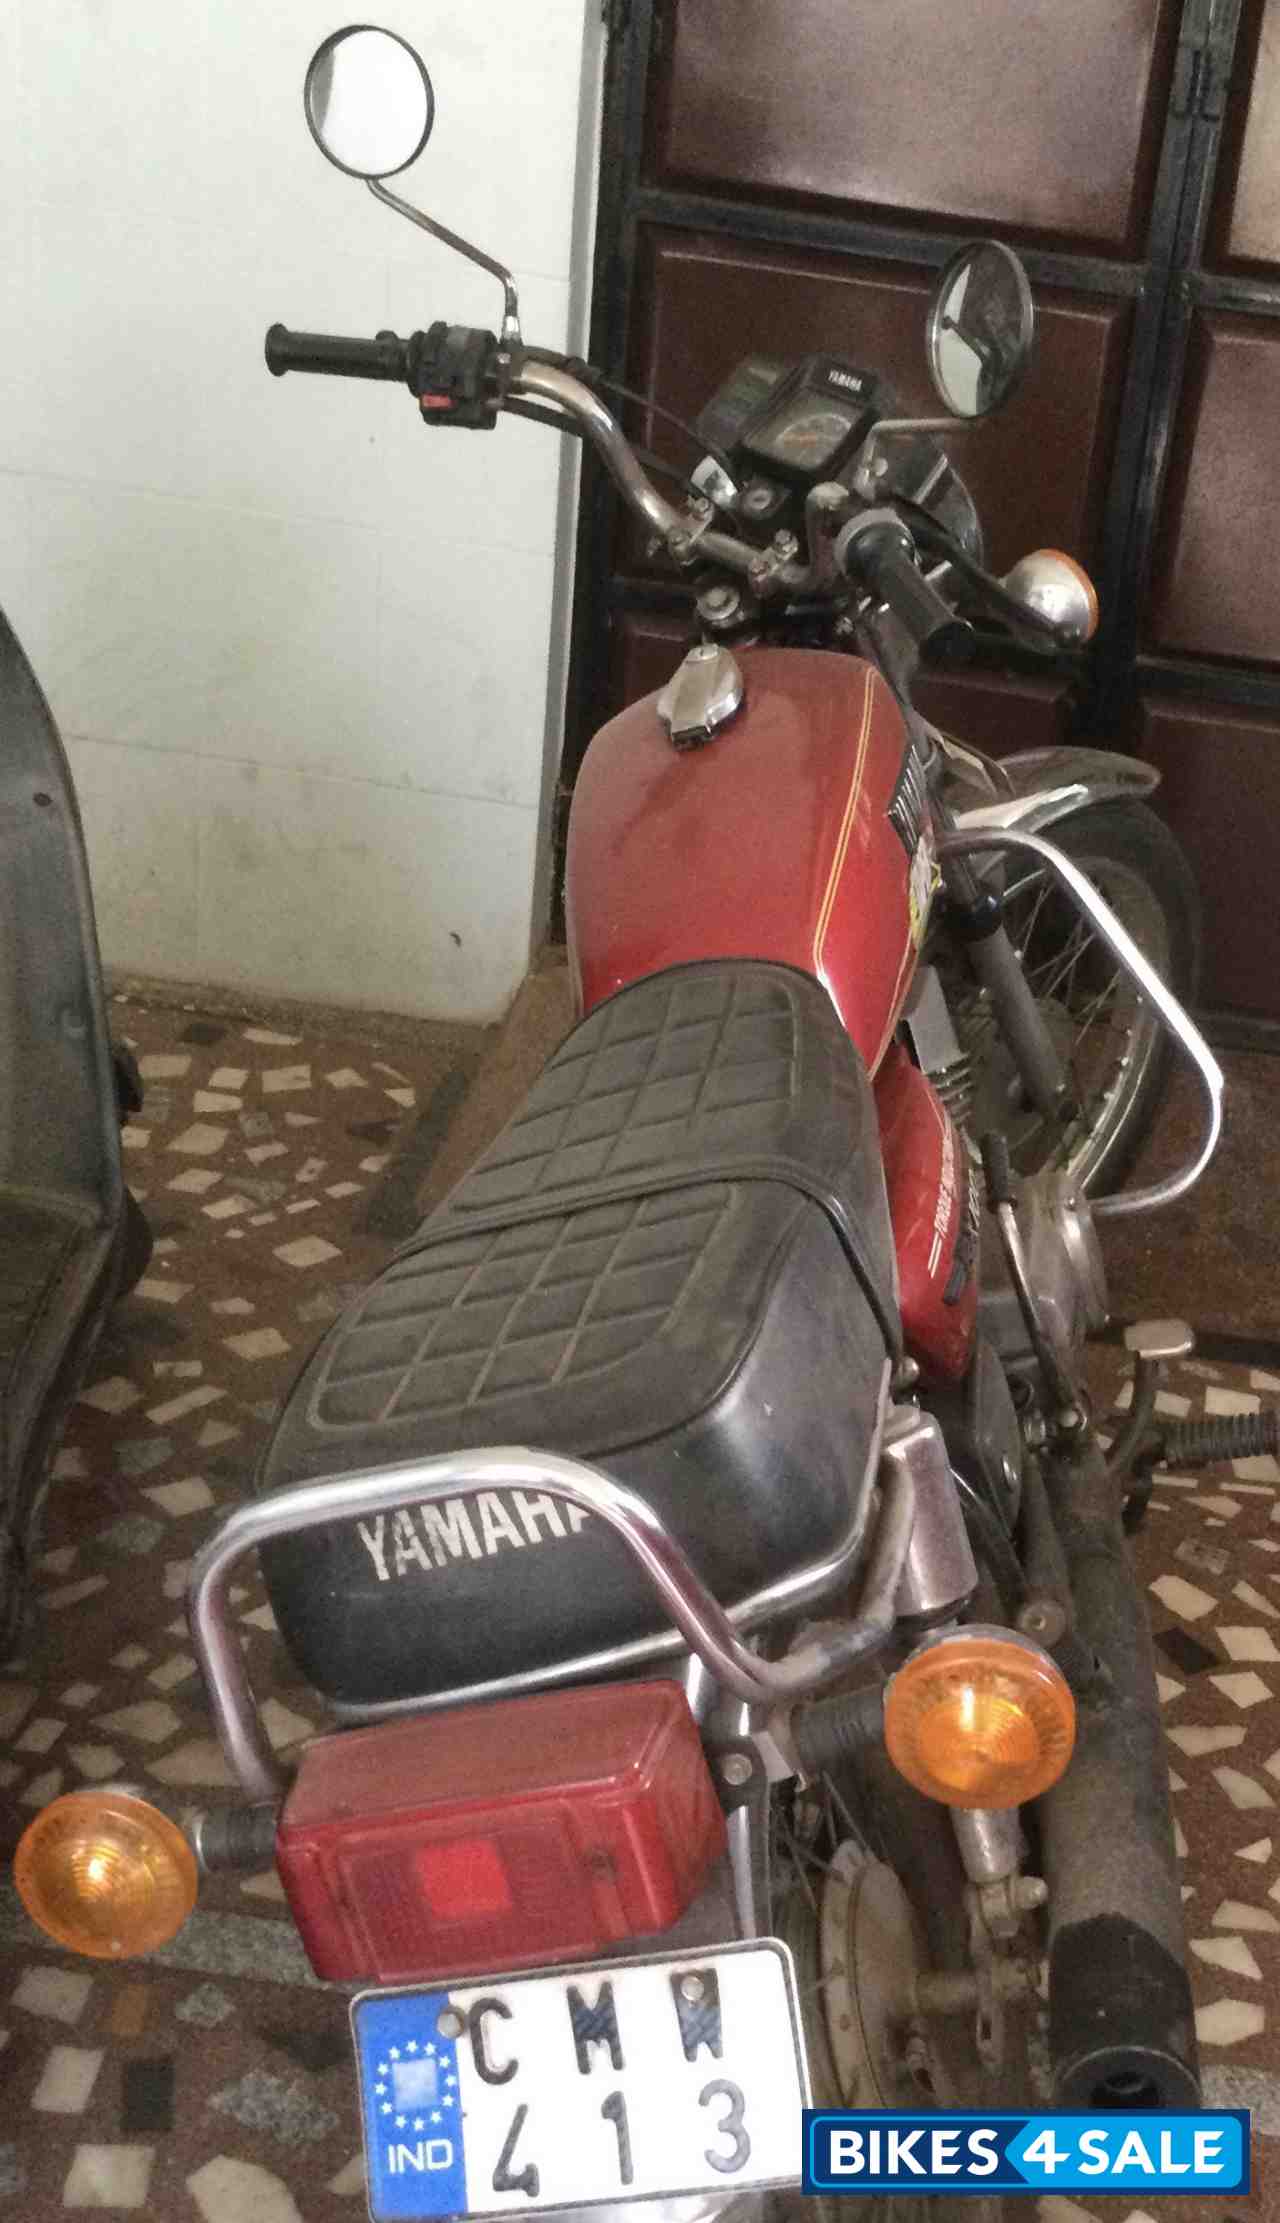 Yamaha Rx 100 Picture 2 Bike Id Bike Located In Bangalore Bikes4sale